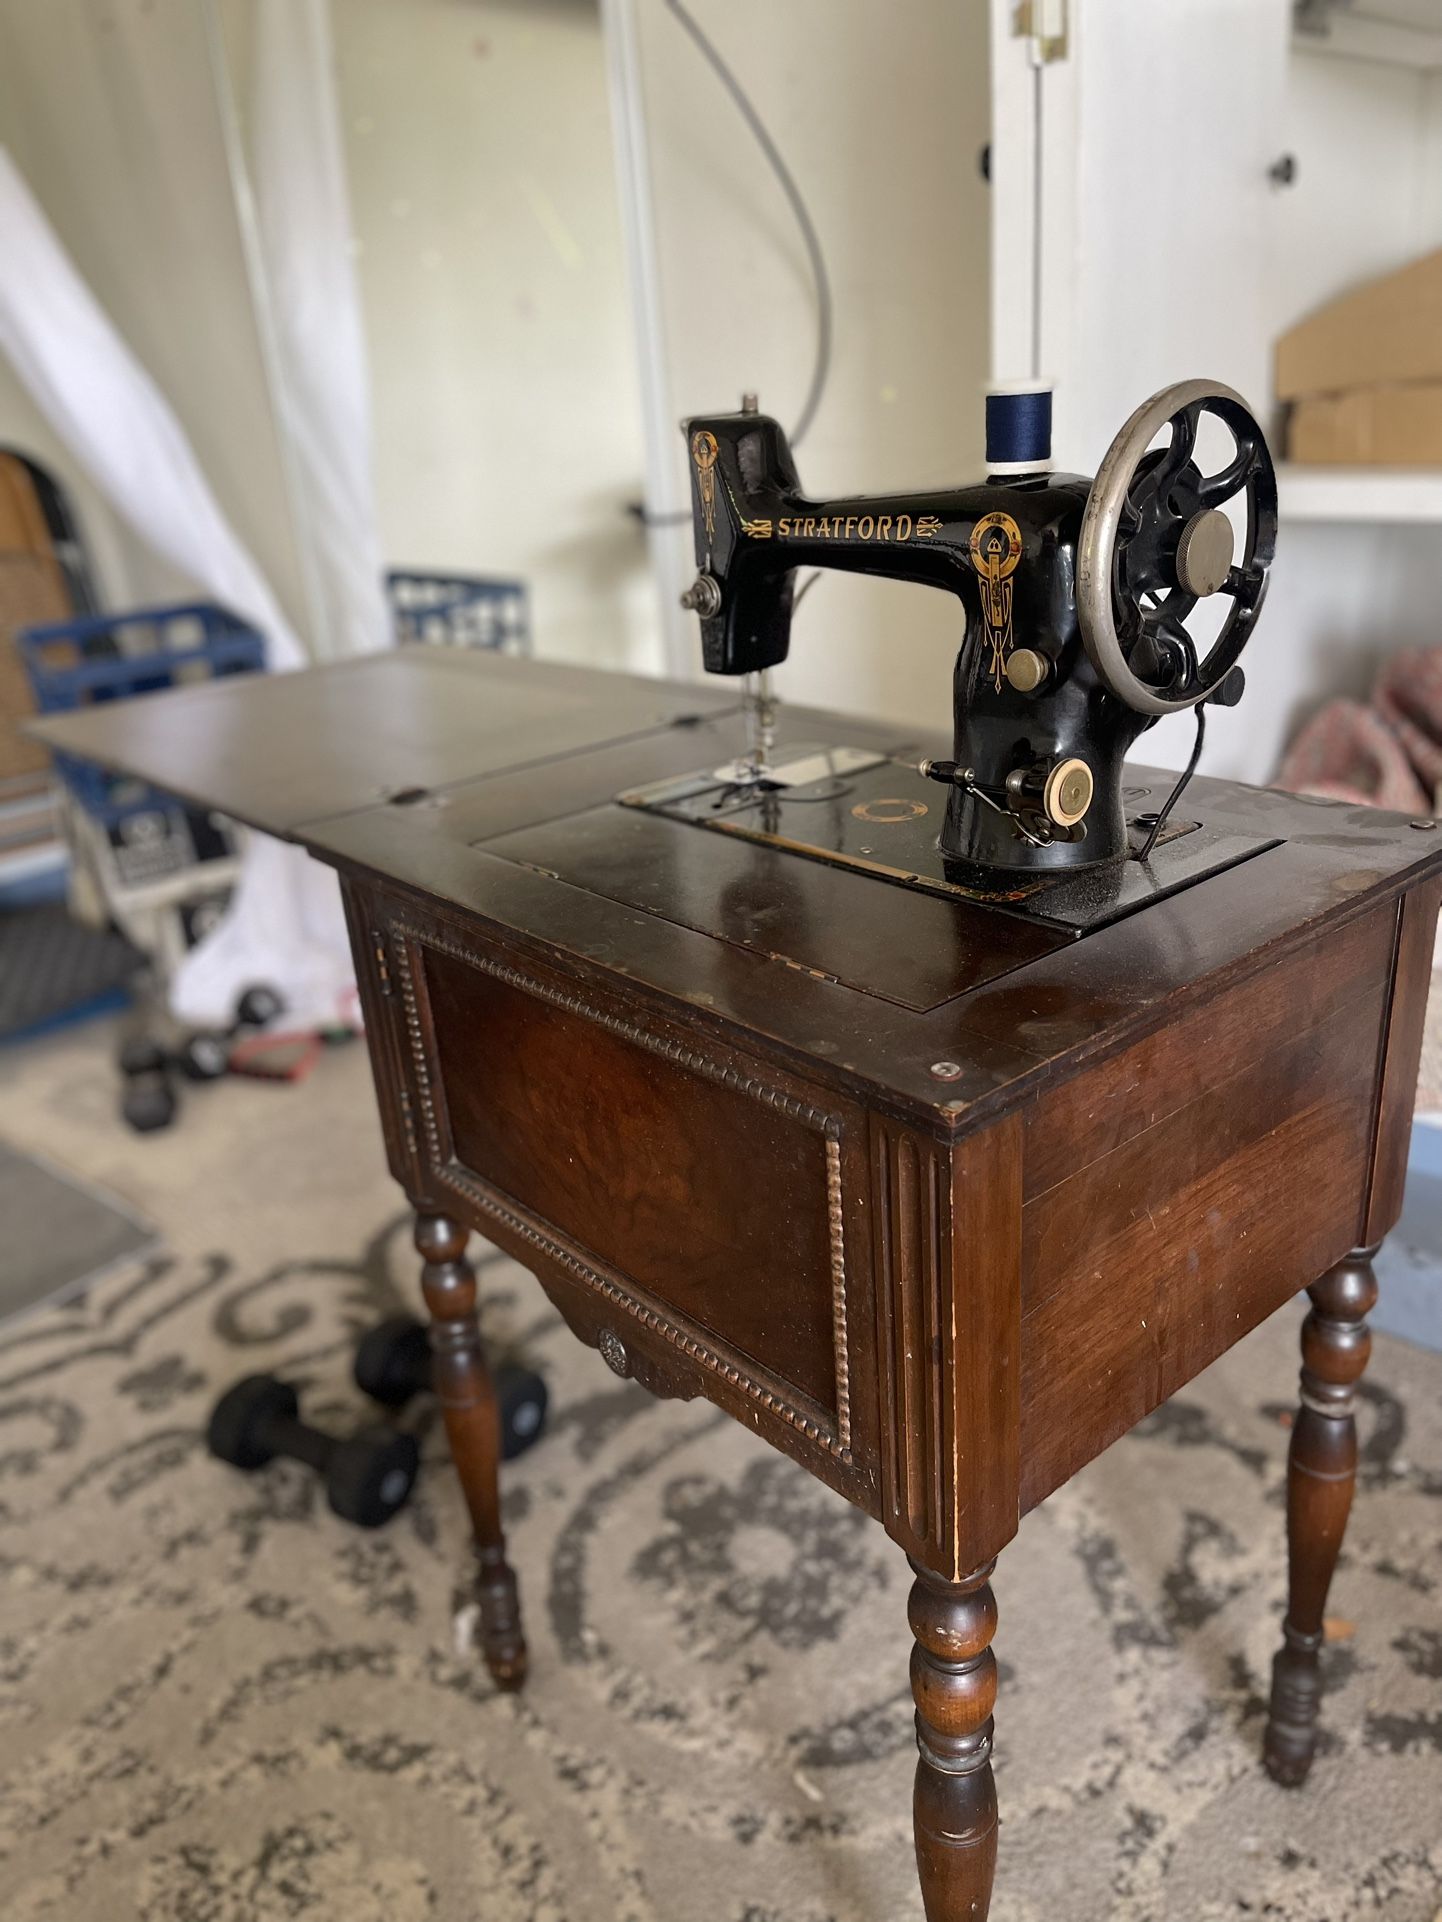 Antique Stratford Sewing Machine